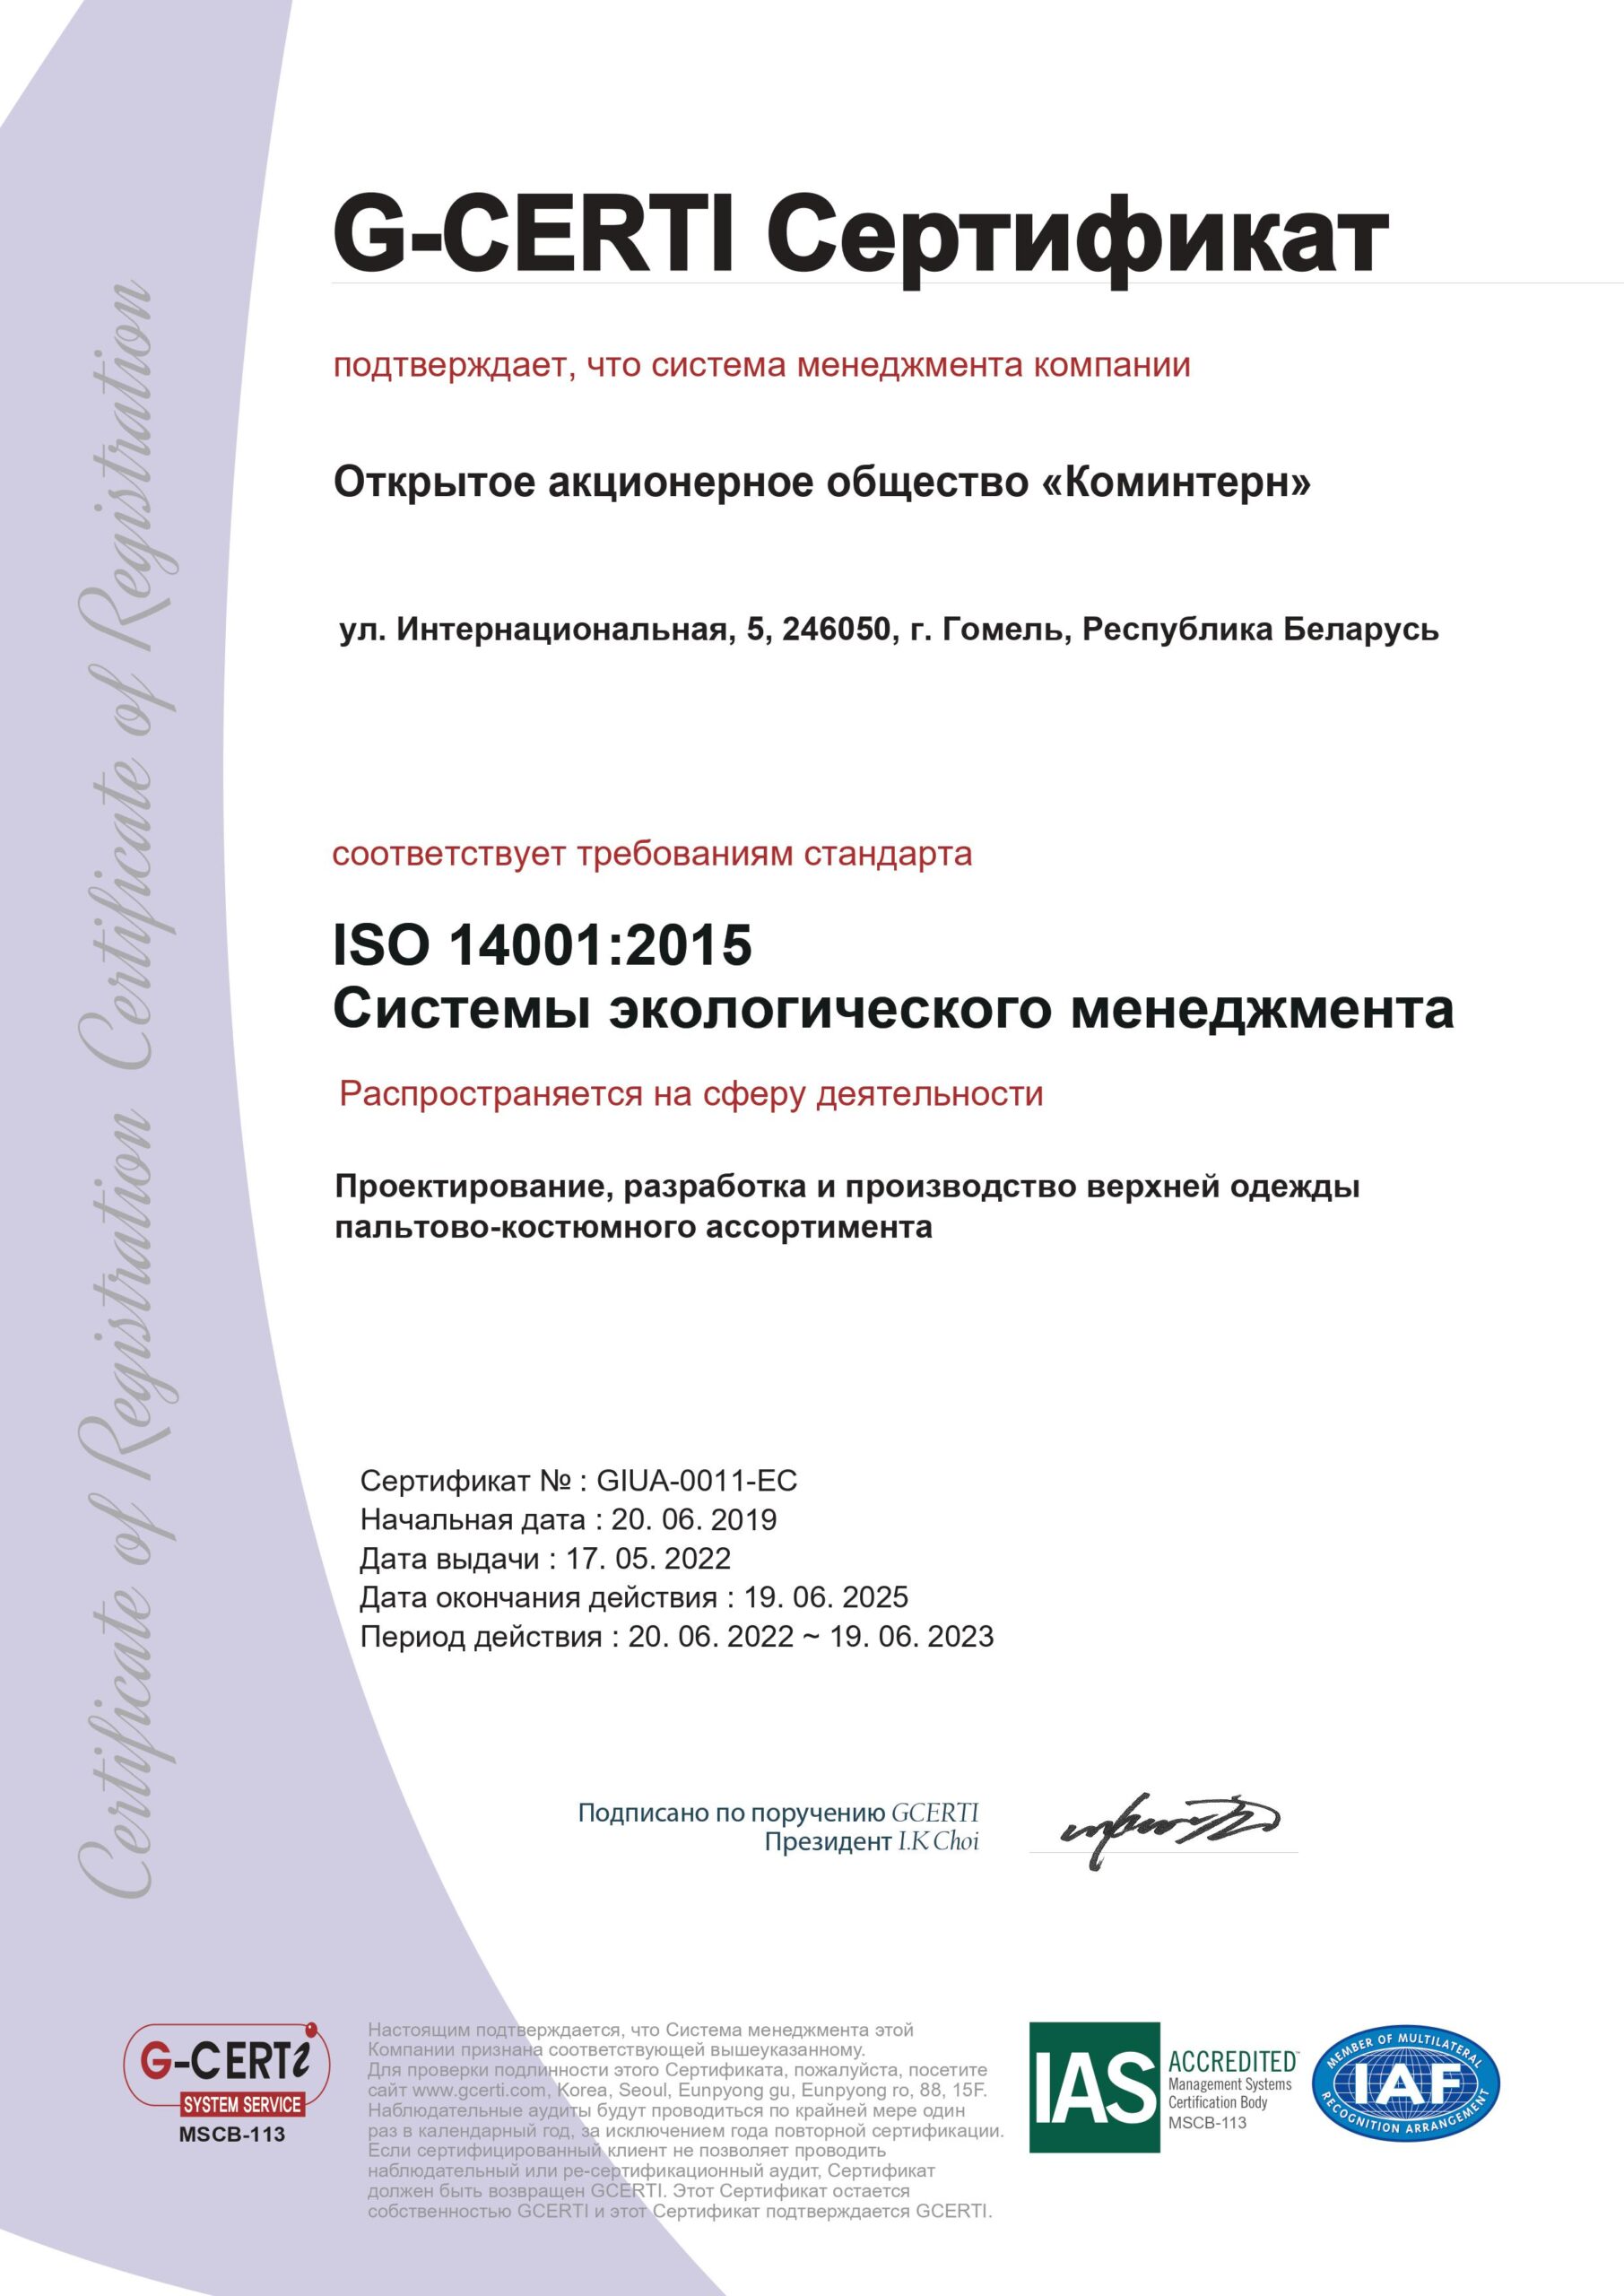 GIUA-0011-EC+2015-4+Rus